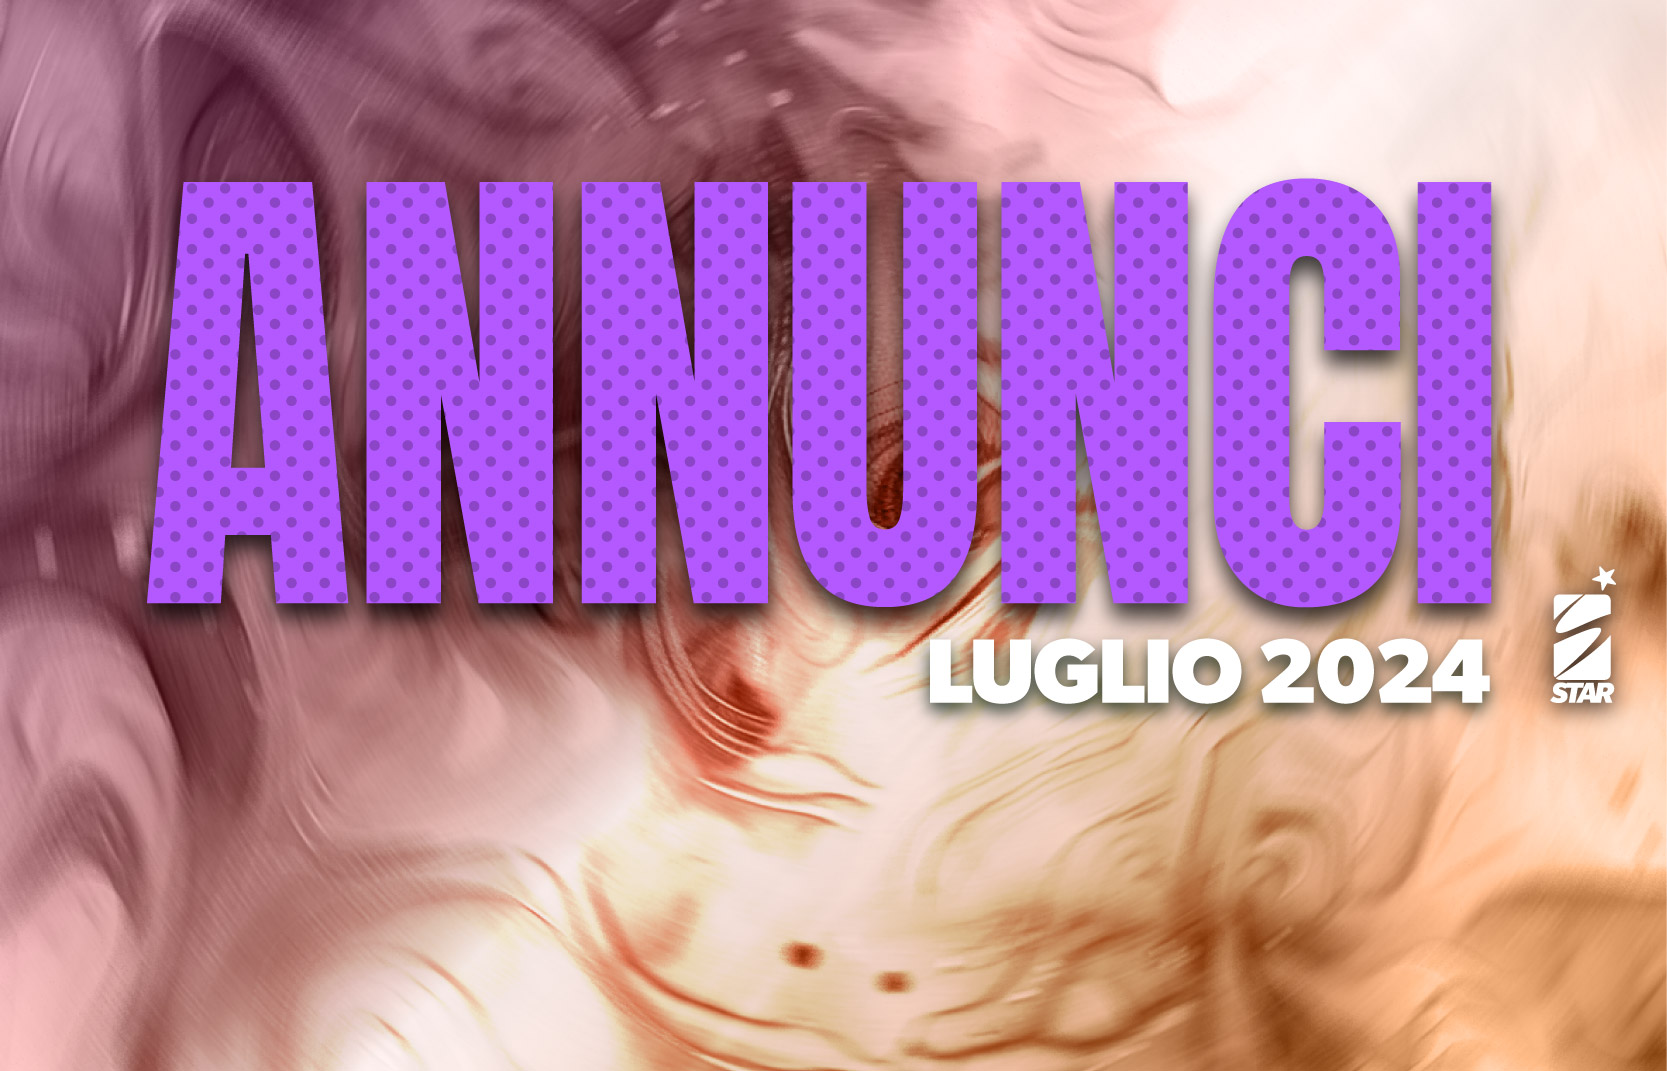 ANNUNCIO - LUGLIO 2024 - HOME.jpg